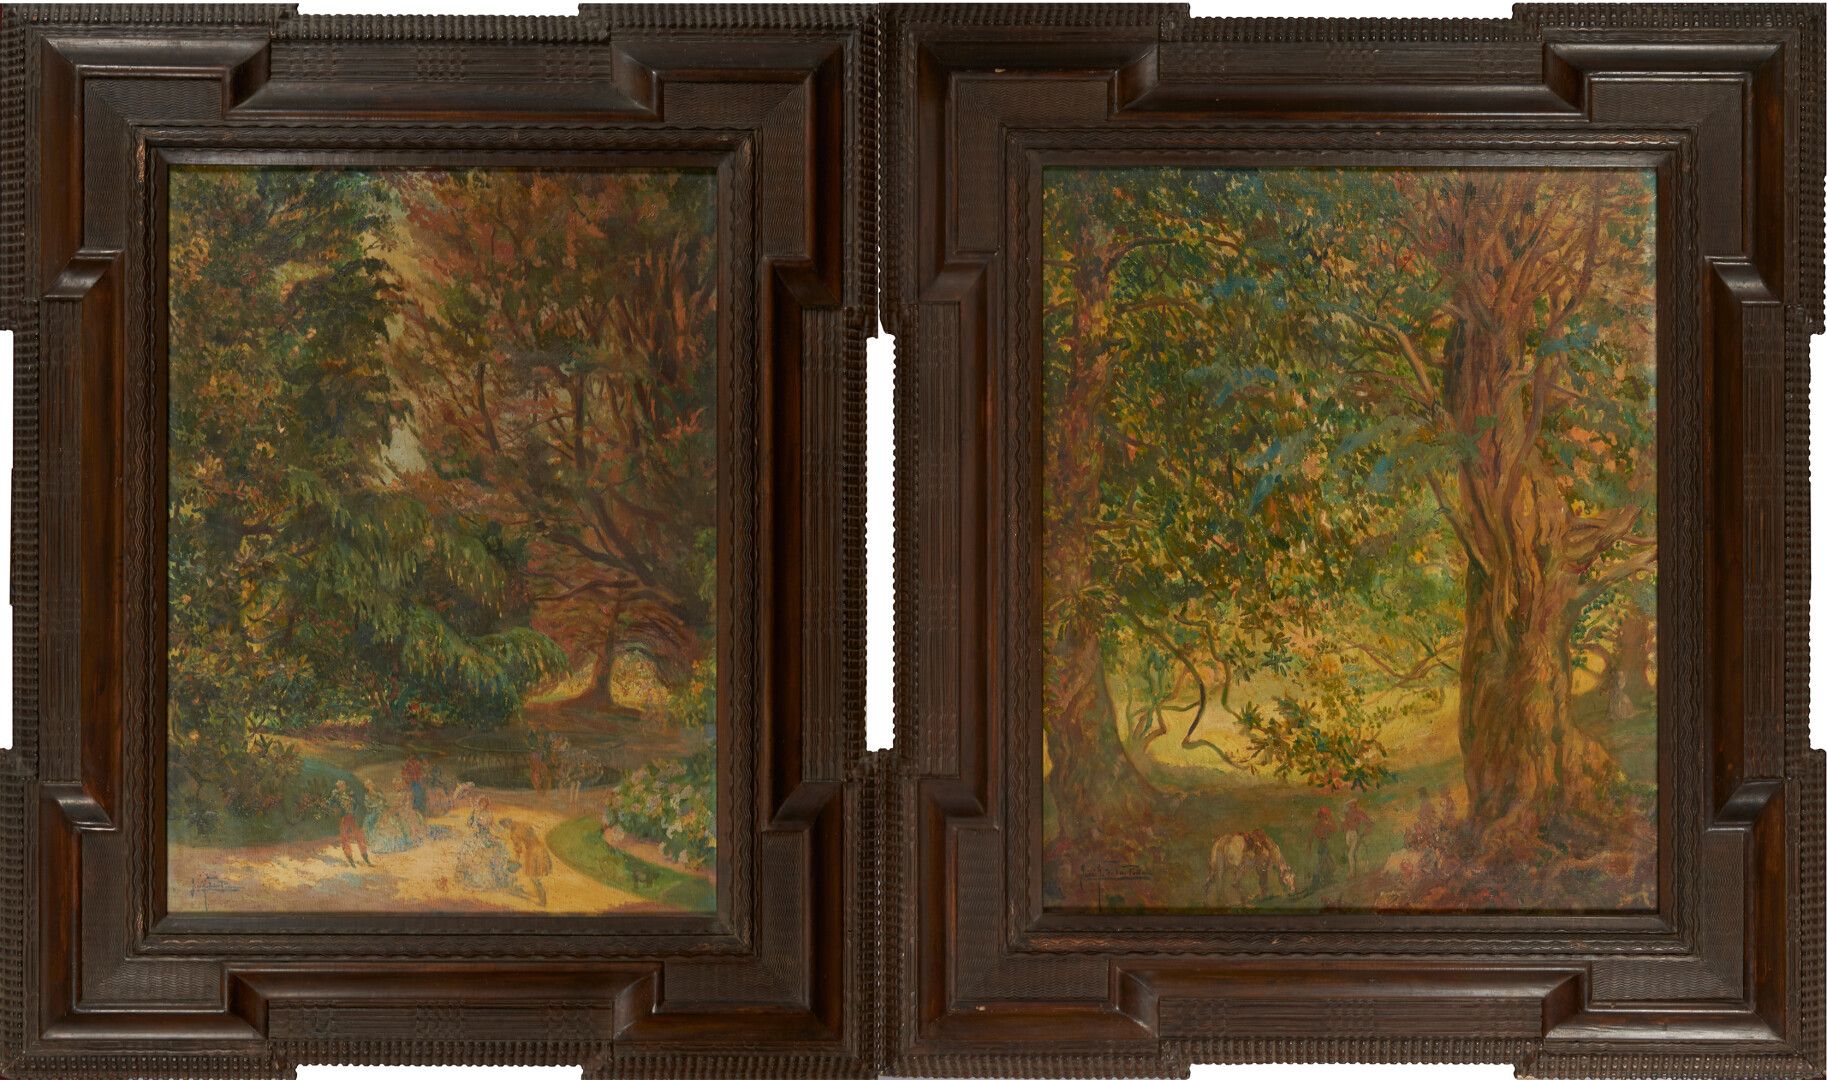 Null de la PEÑA José 1887-1961)

"Recepción en un parque" dos óleos sobre lienzo&hellip;